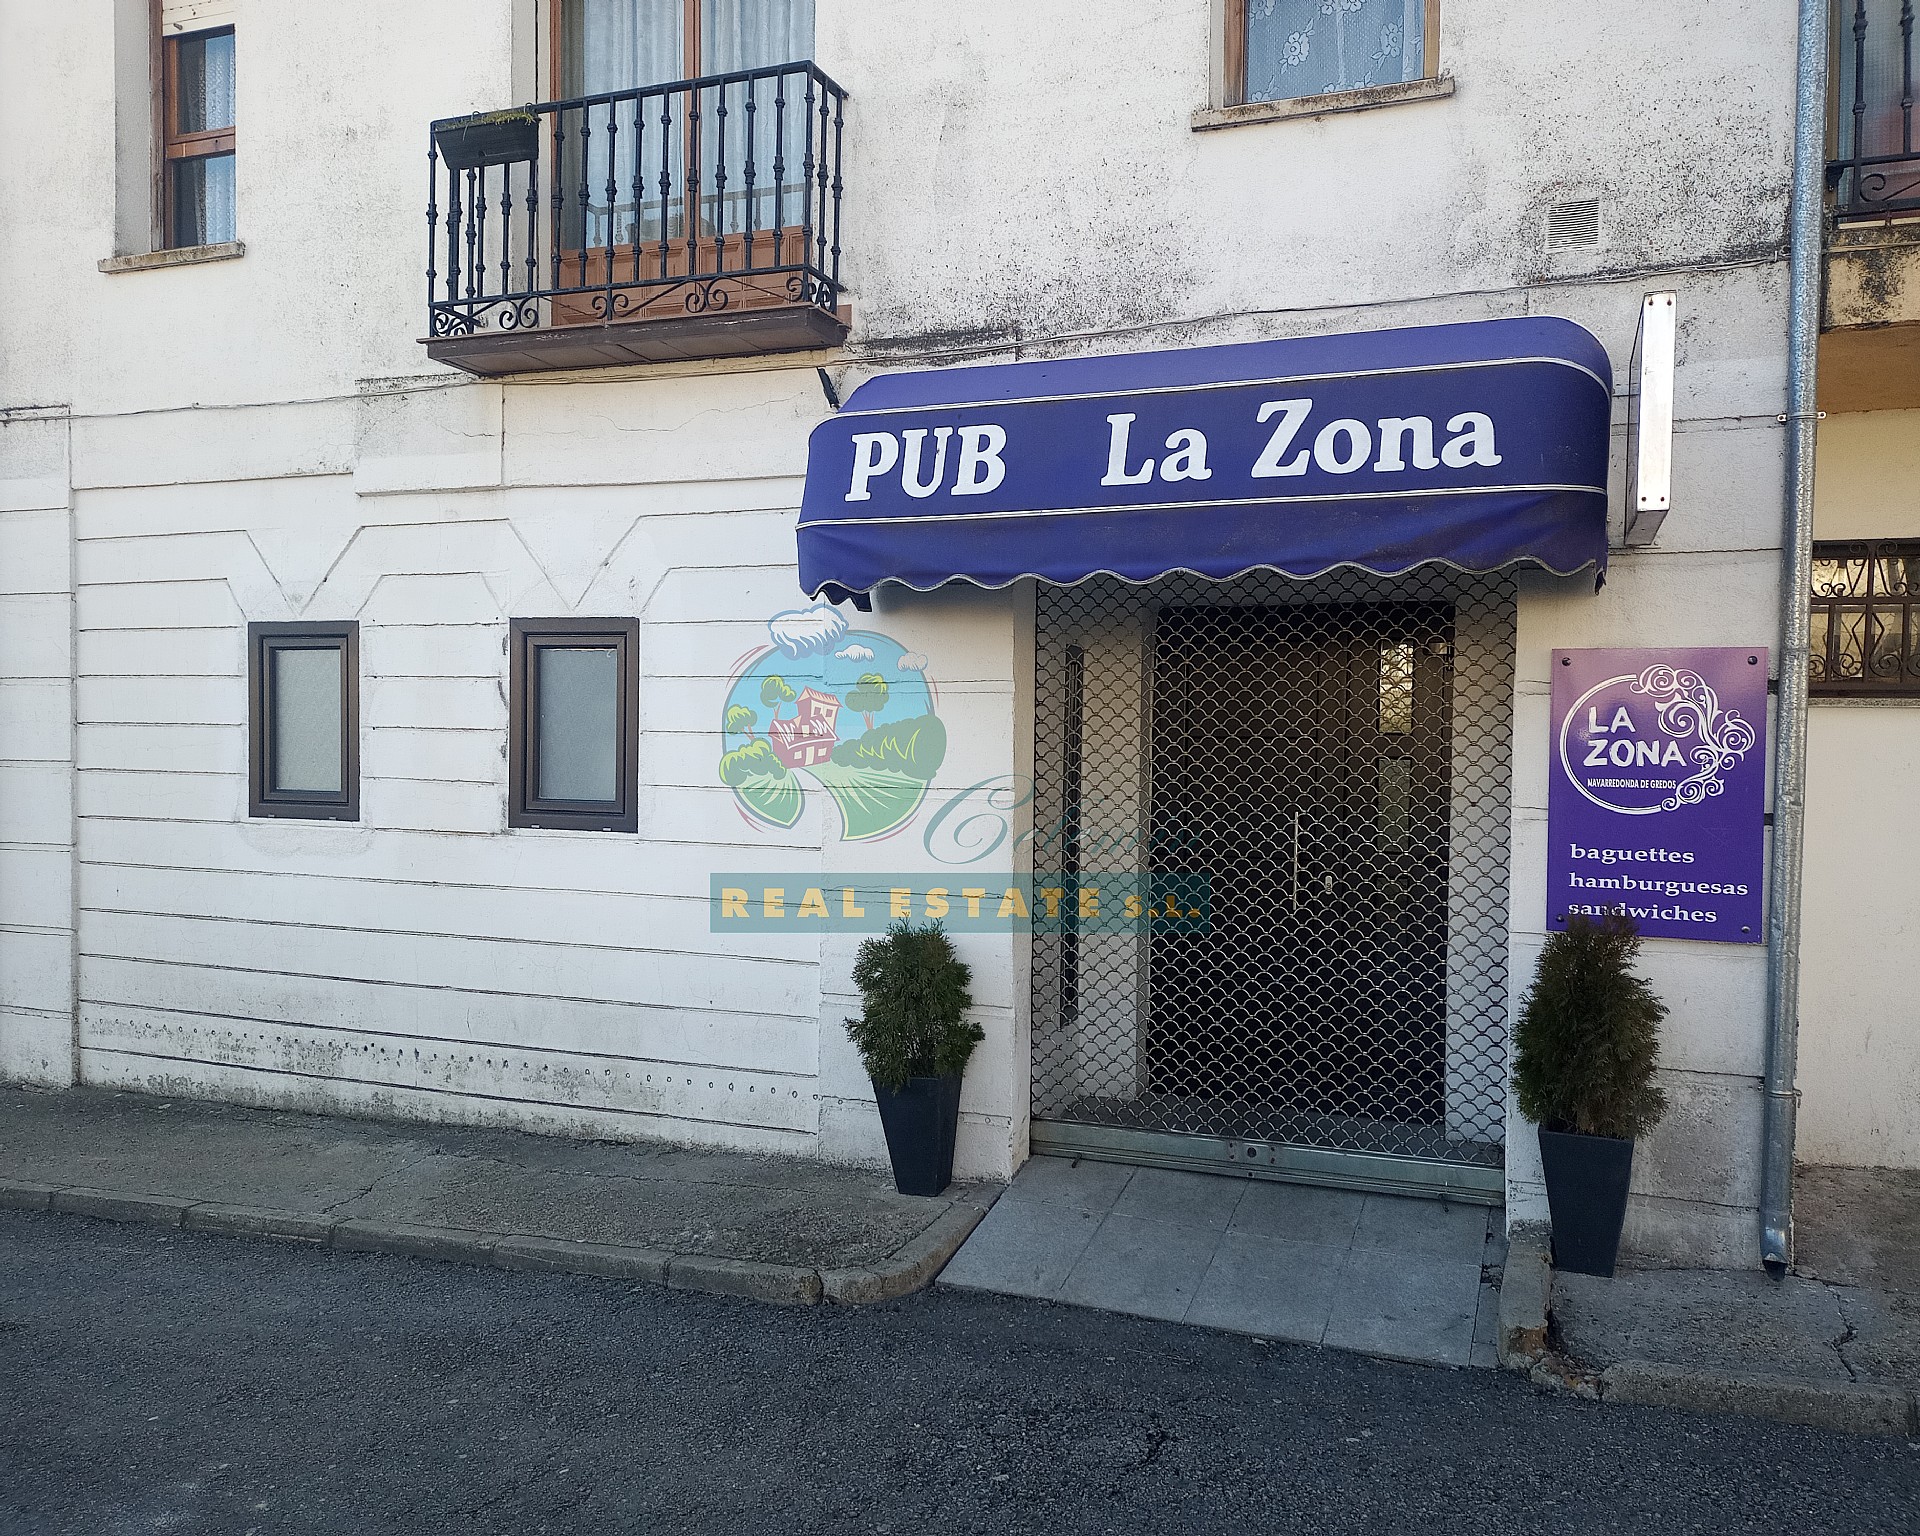 Local pub in Sierra de Gredos